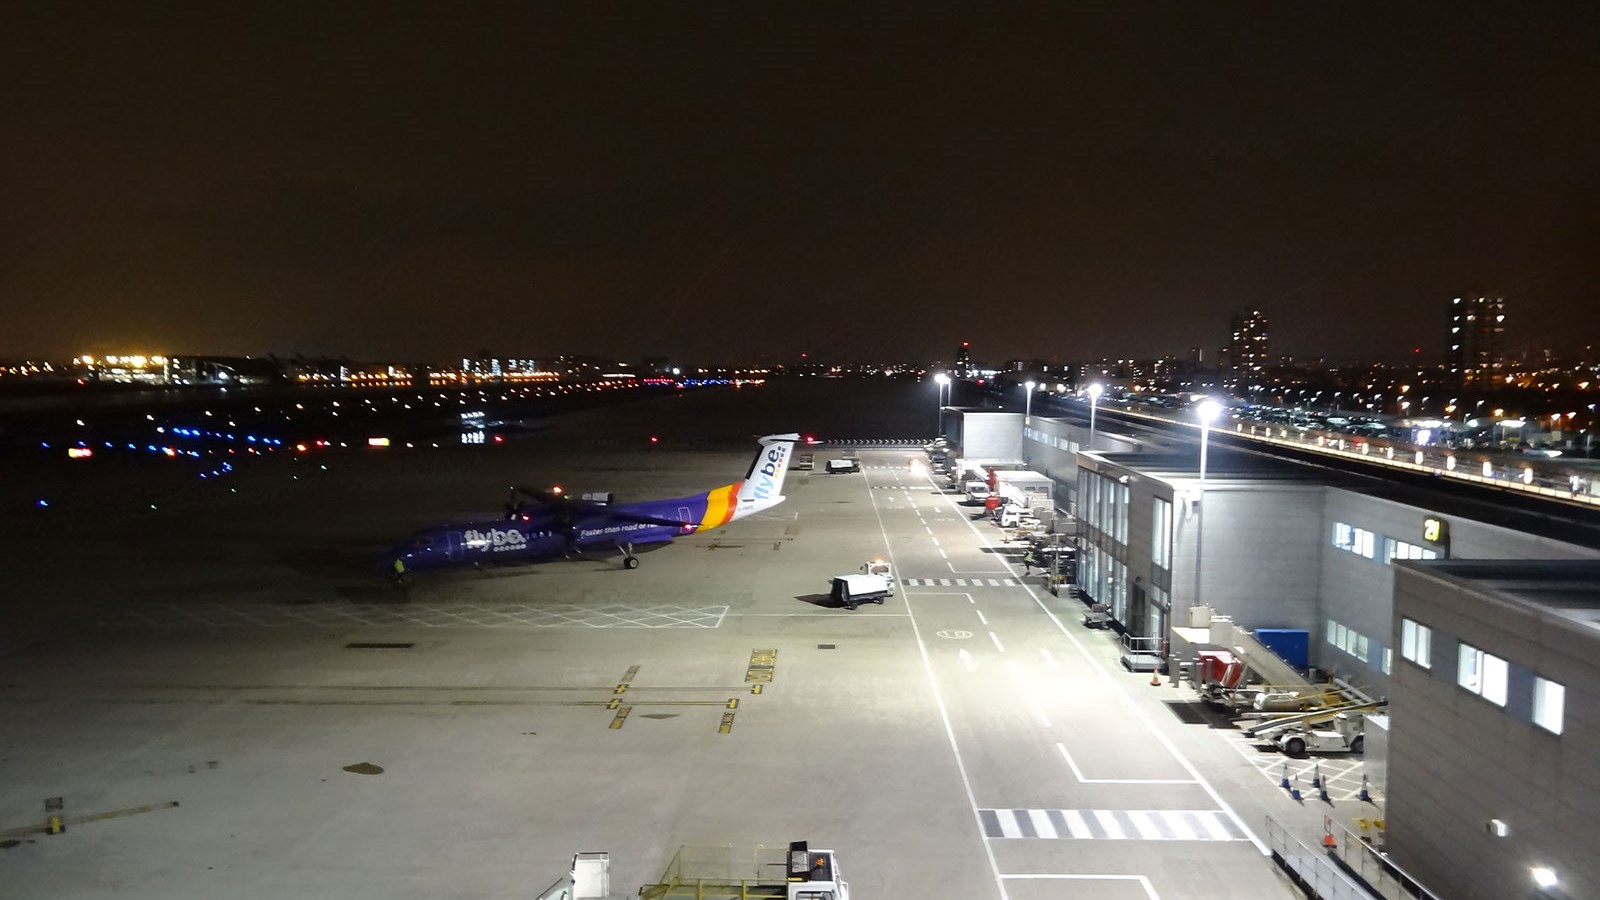 Συναγερμός στο αεροδρόμιο της Γλασκώβης – Έκλεισε προσωρινά λόγω παγετού – ΦΩΤΟ